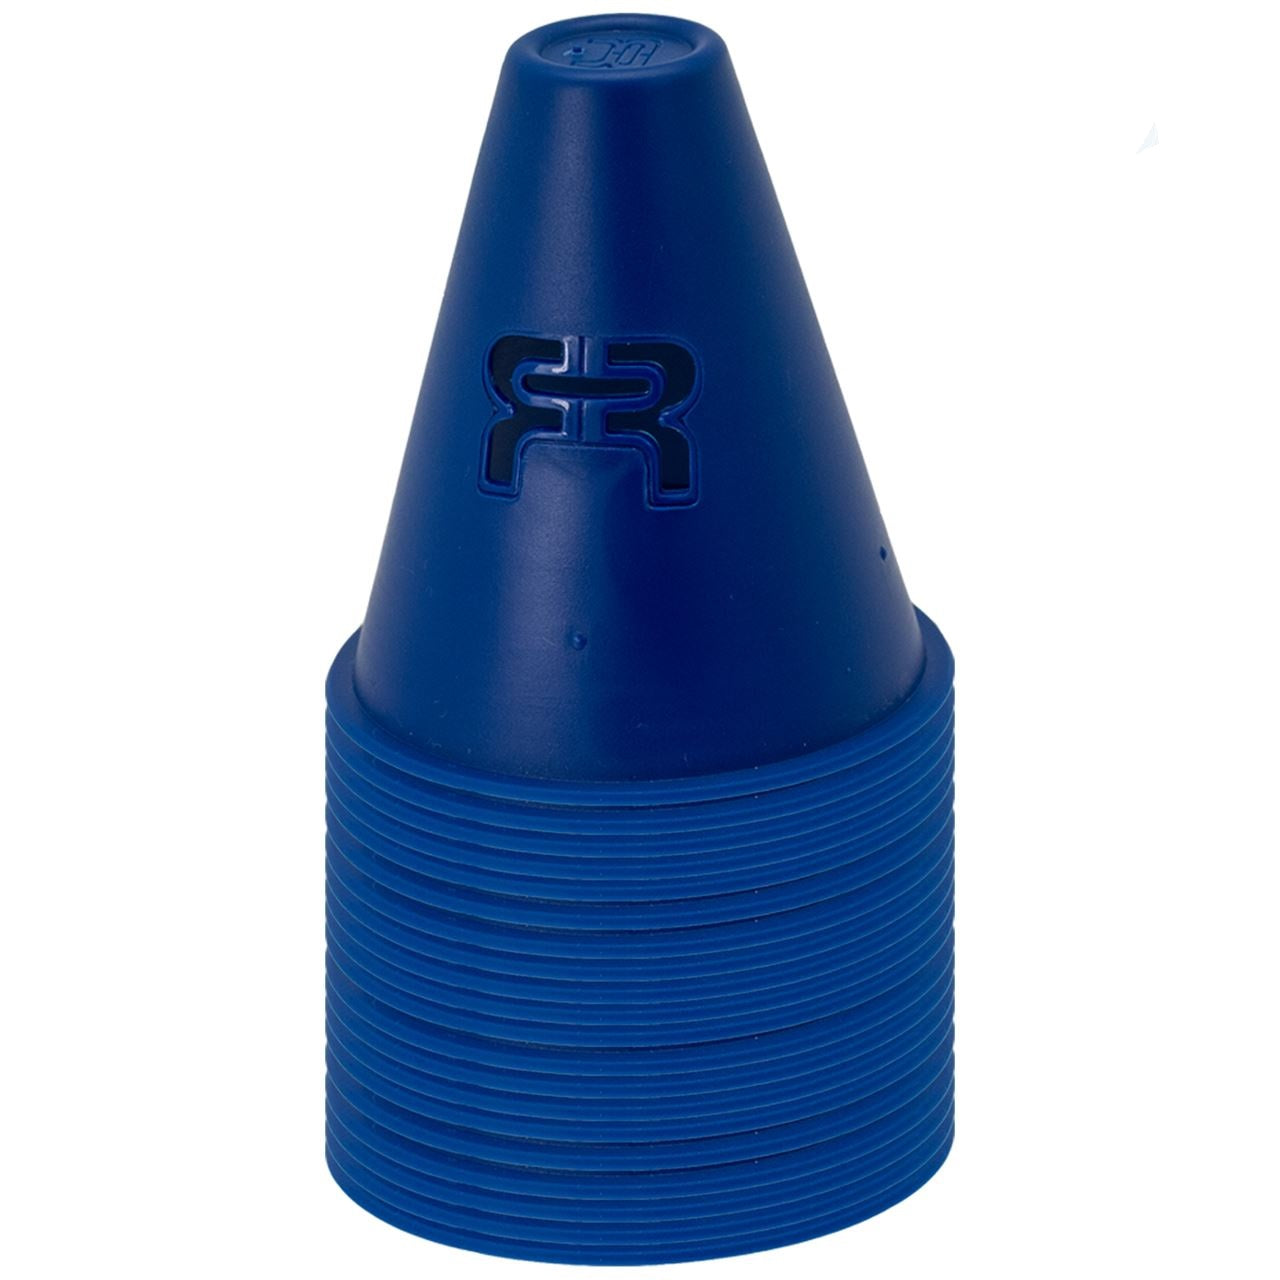 FR Cones - Navy Blue